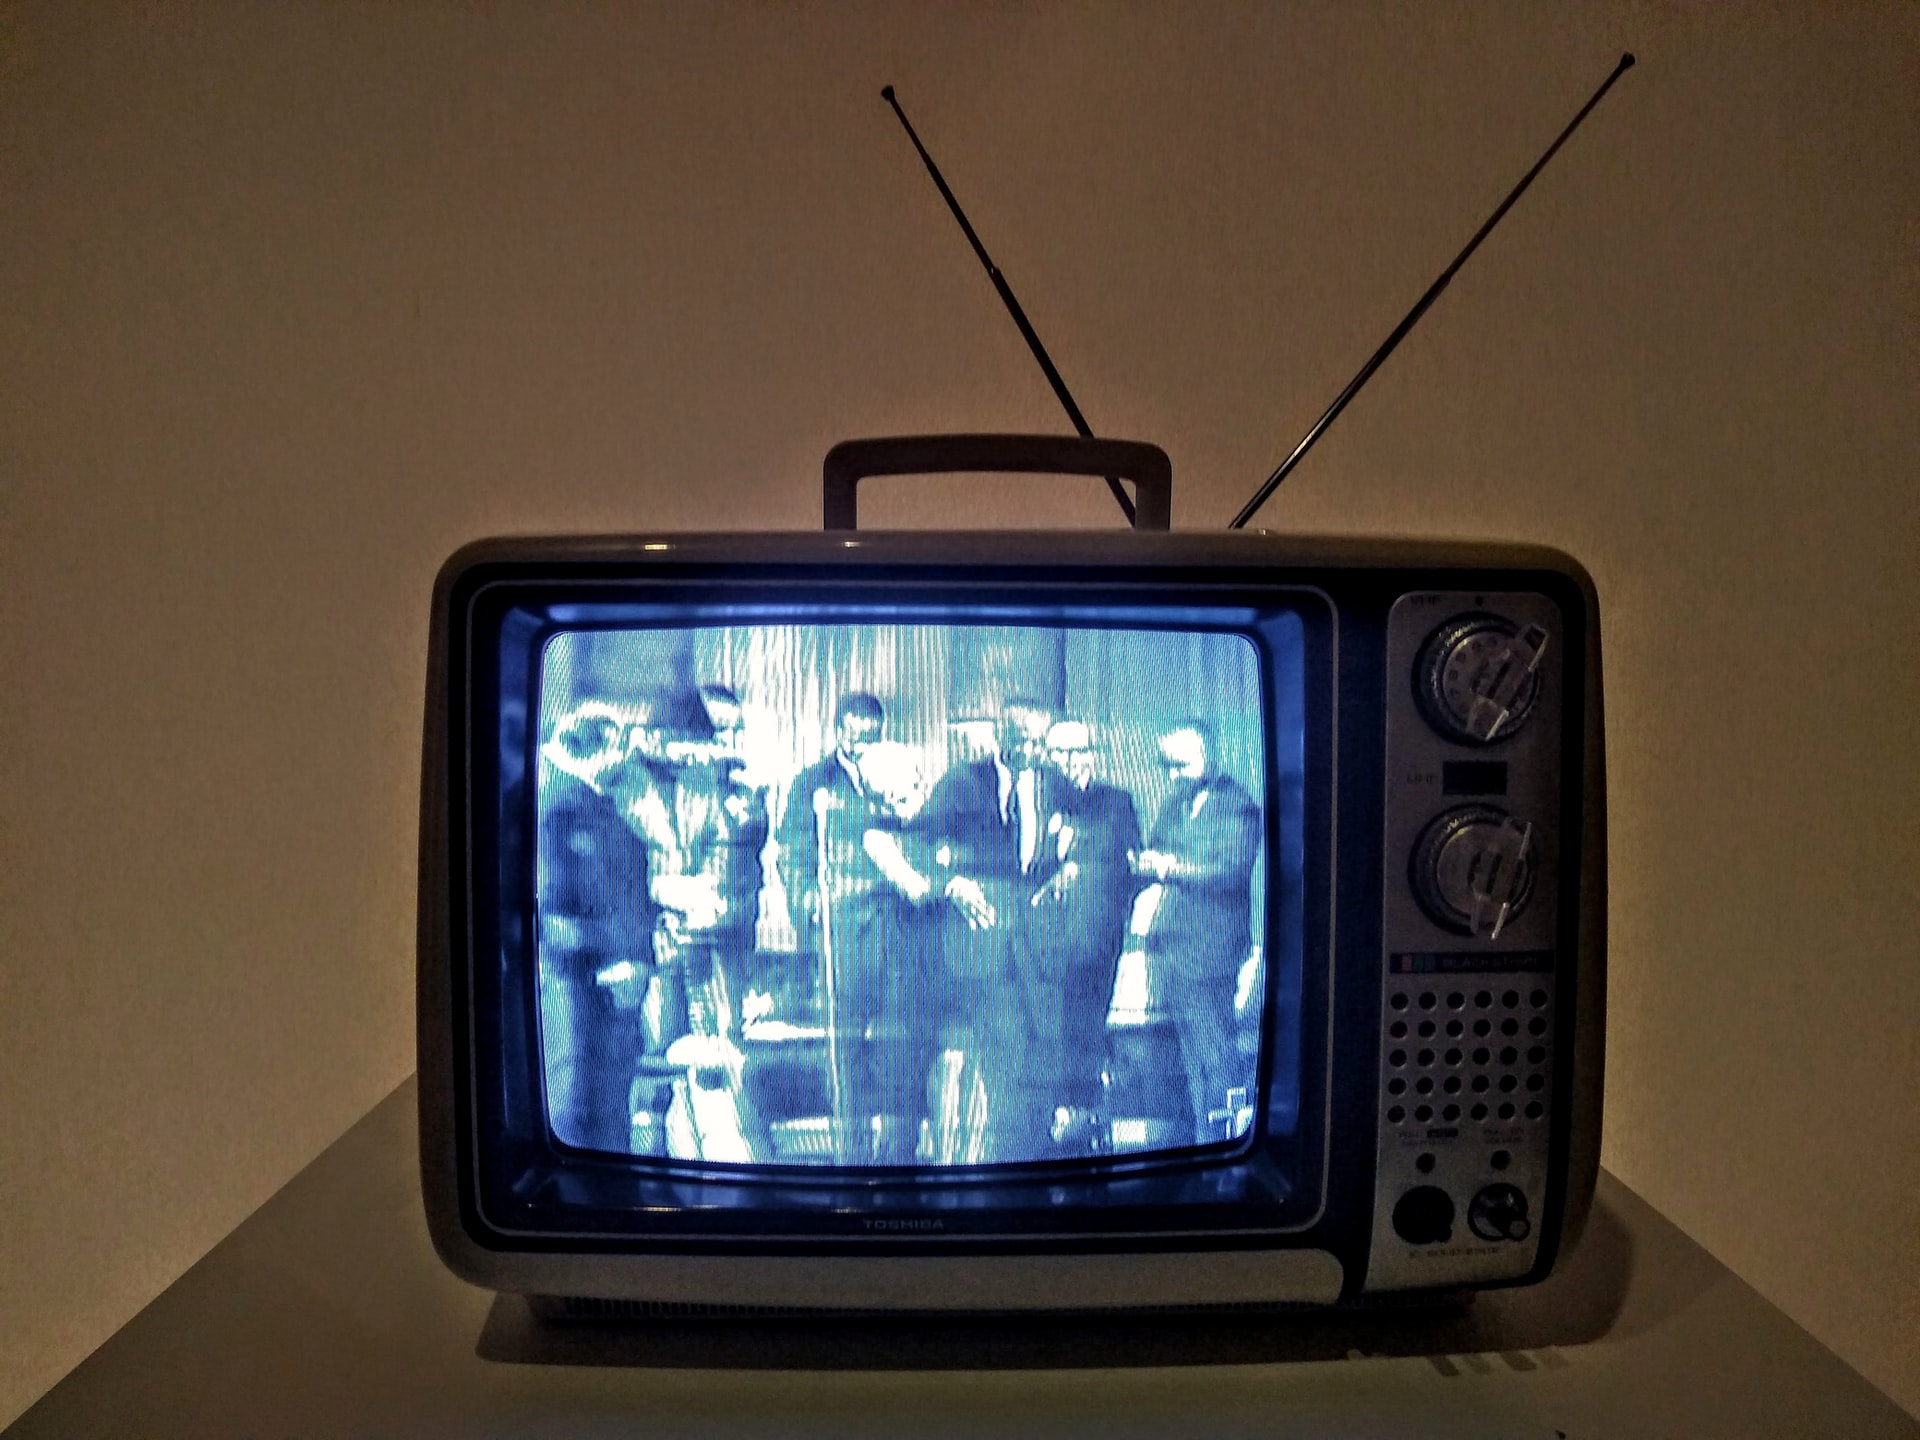 Televisores, un pasaje por su historia